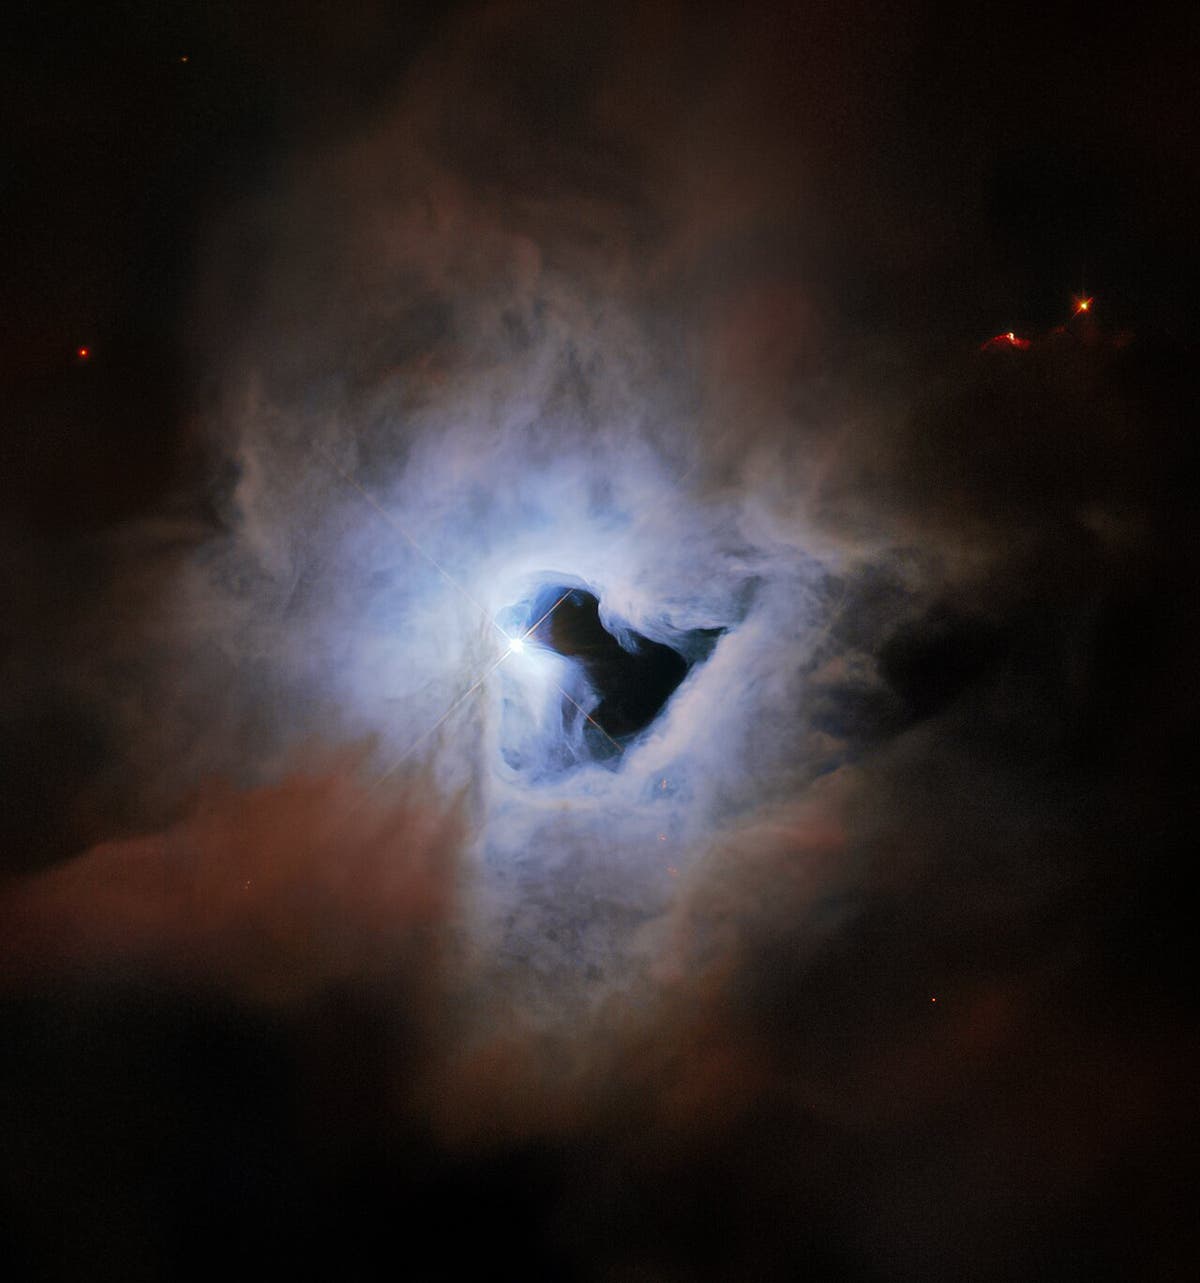 تكشف صورة تلسكوب هابل الجديدة عن “ثقب المفتاح” الكوني العملاق في الفضاء المظلم